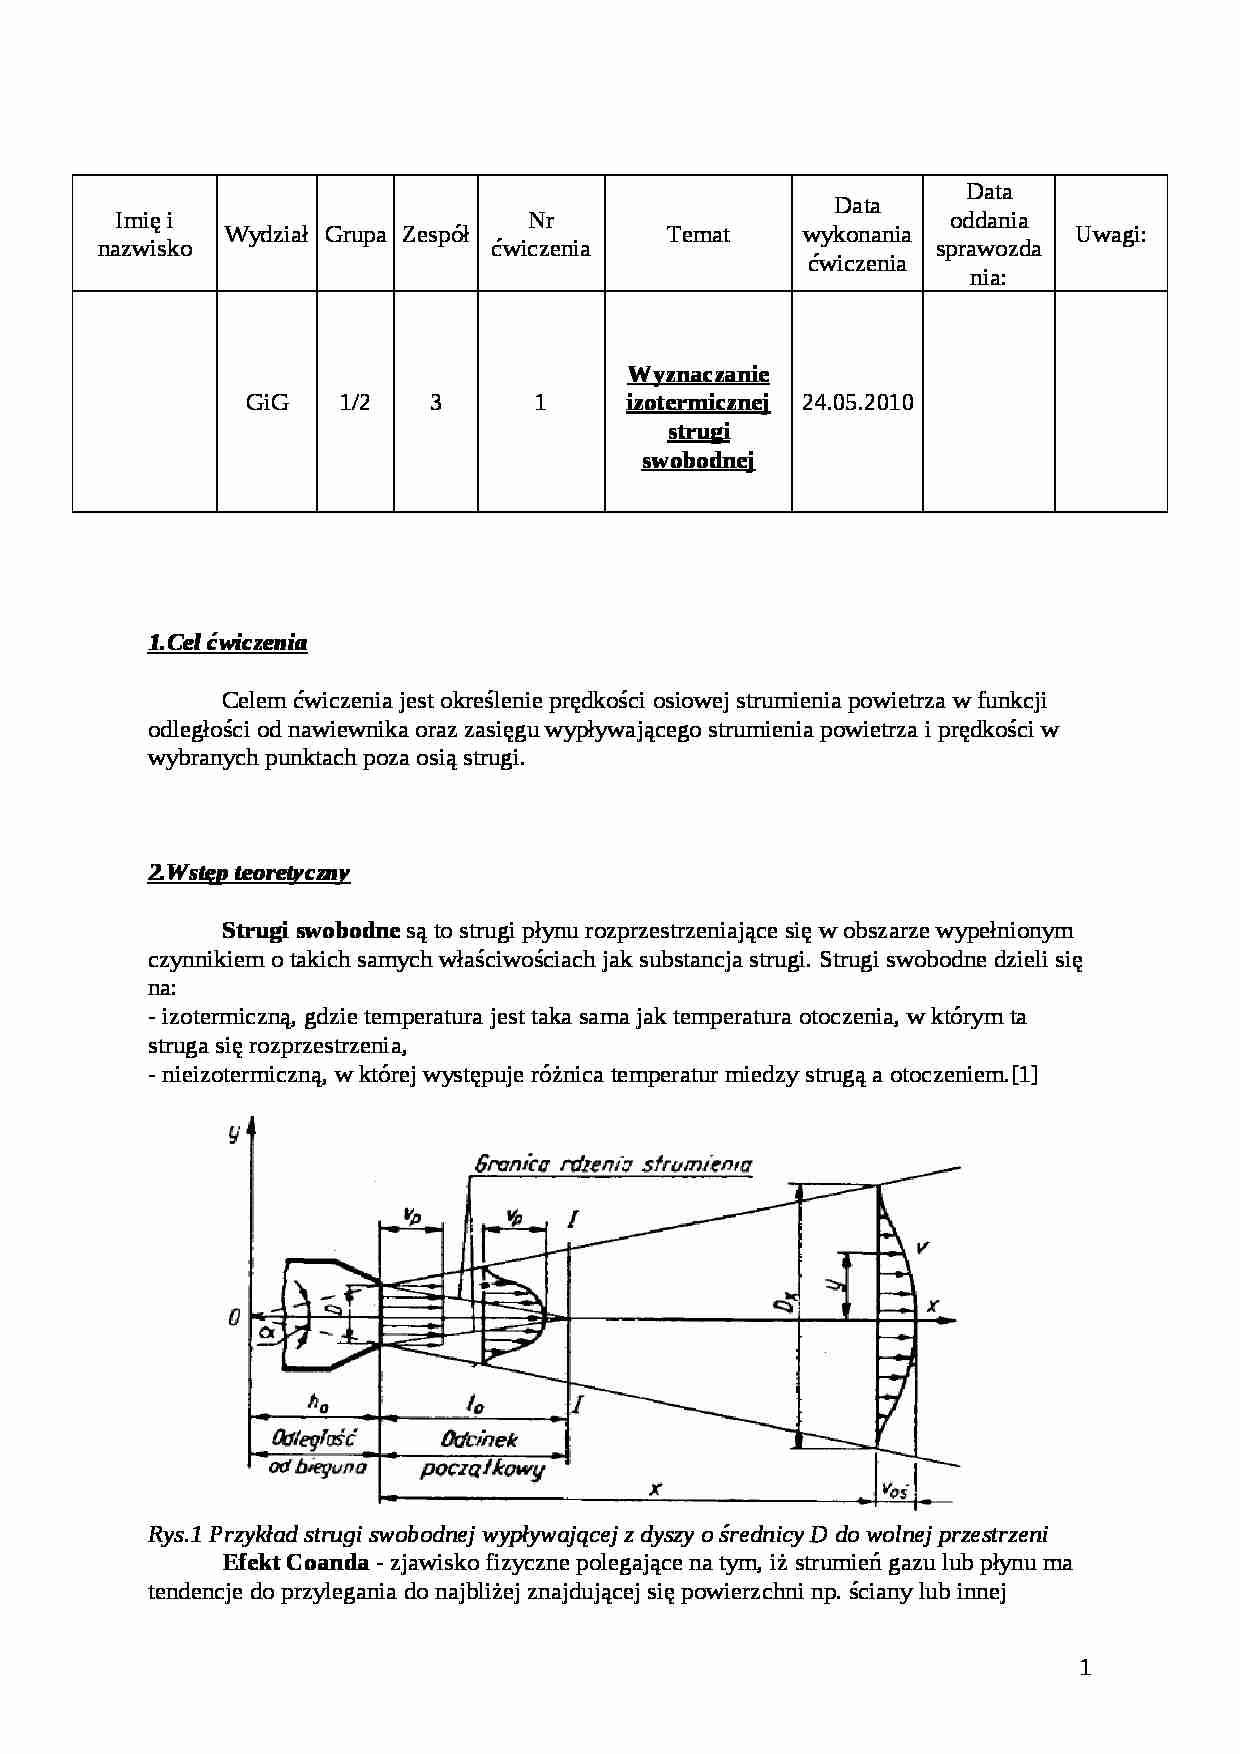 Wyznaczanie izotermicznej strugi swobodnej - sprawozdanie - strona 1